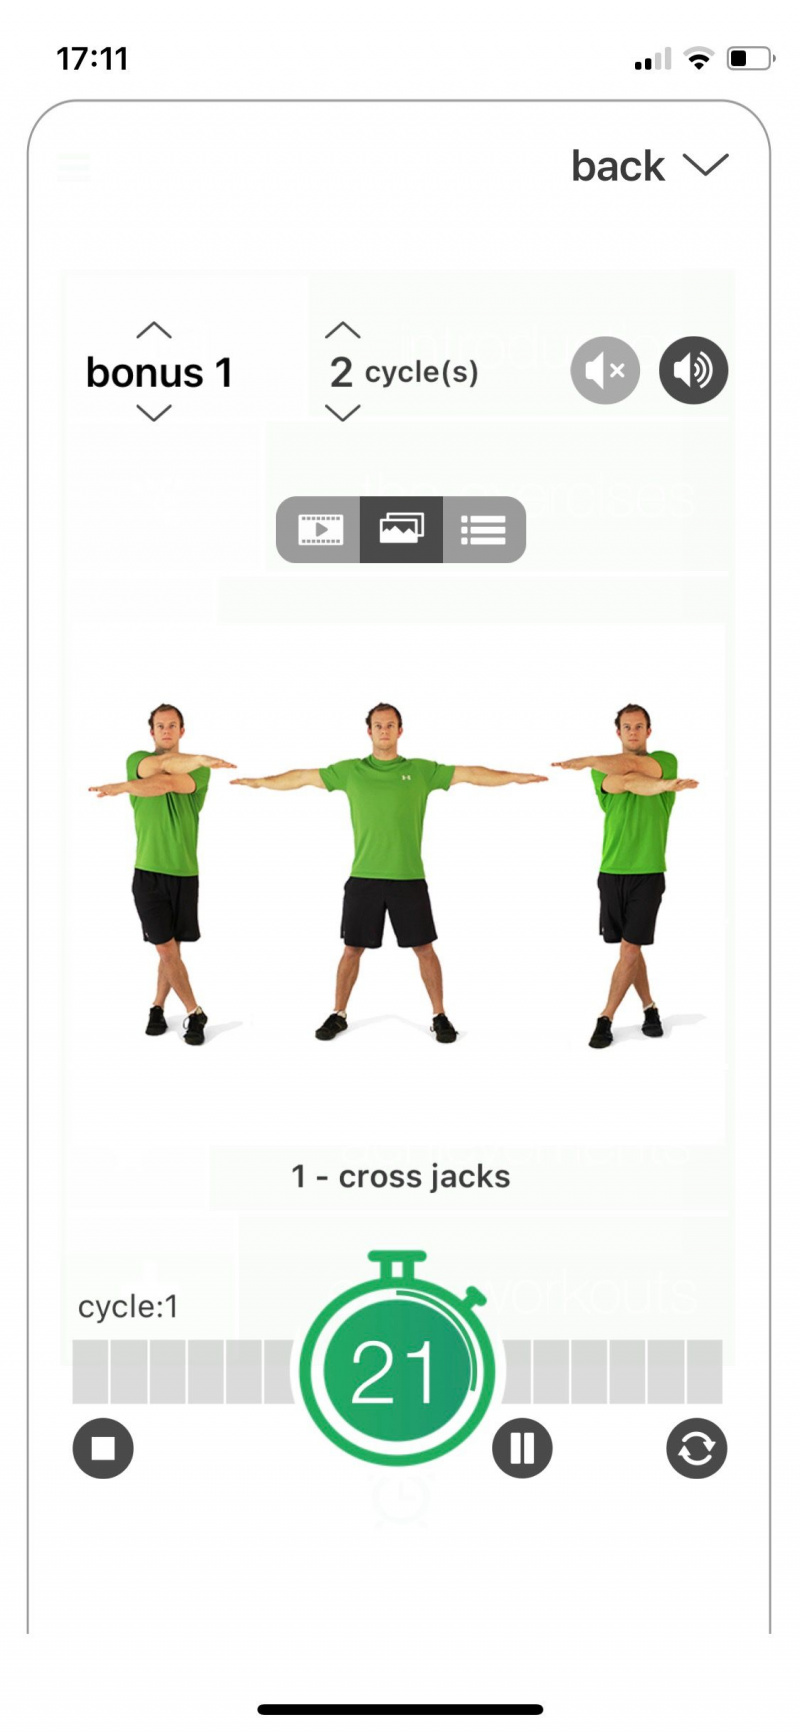   Captura de pantalla del desafío de la aplicación de 7 minutos que muestra la pantalla de entrenamiento